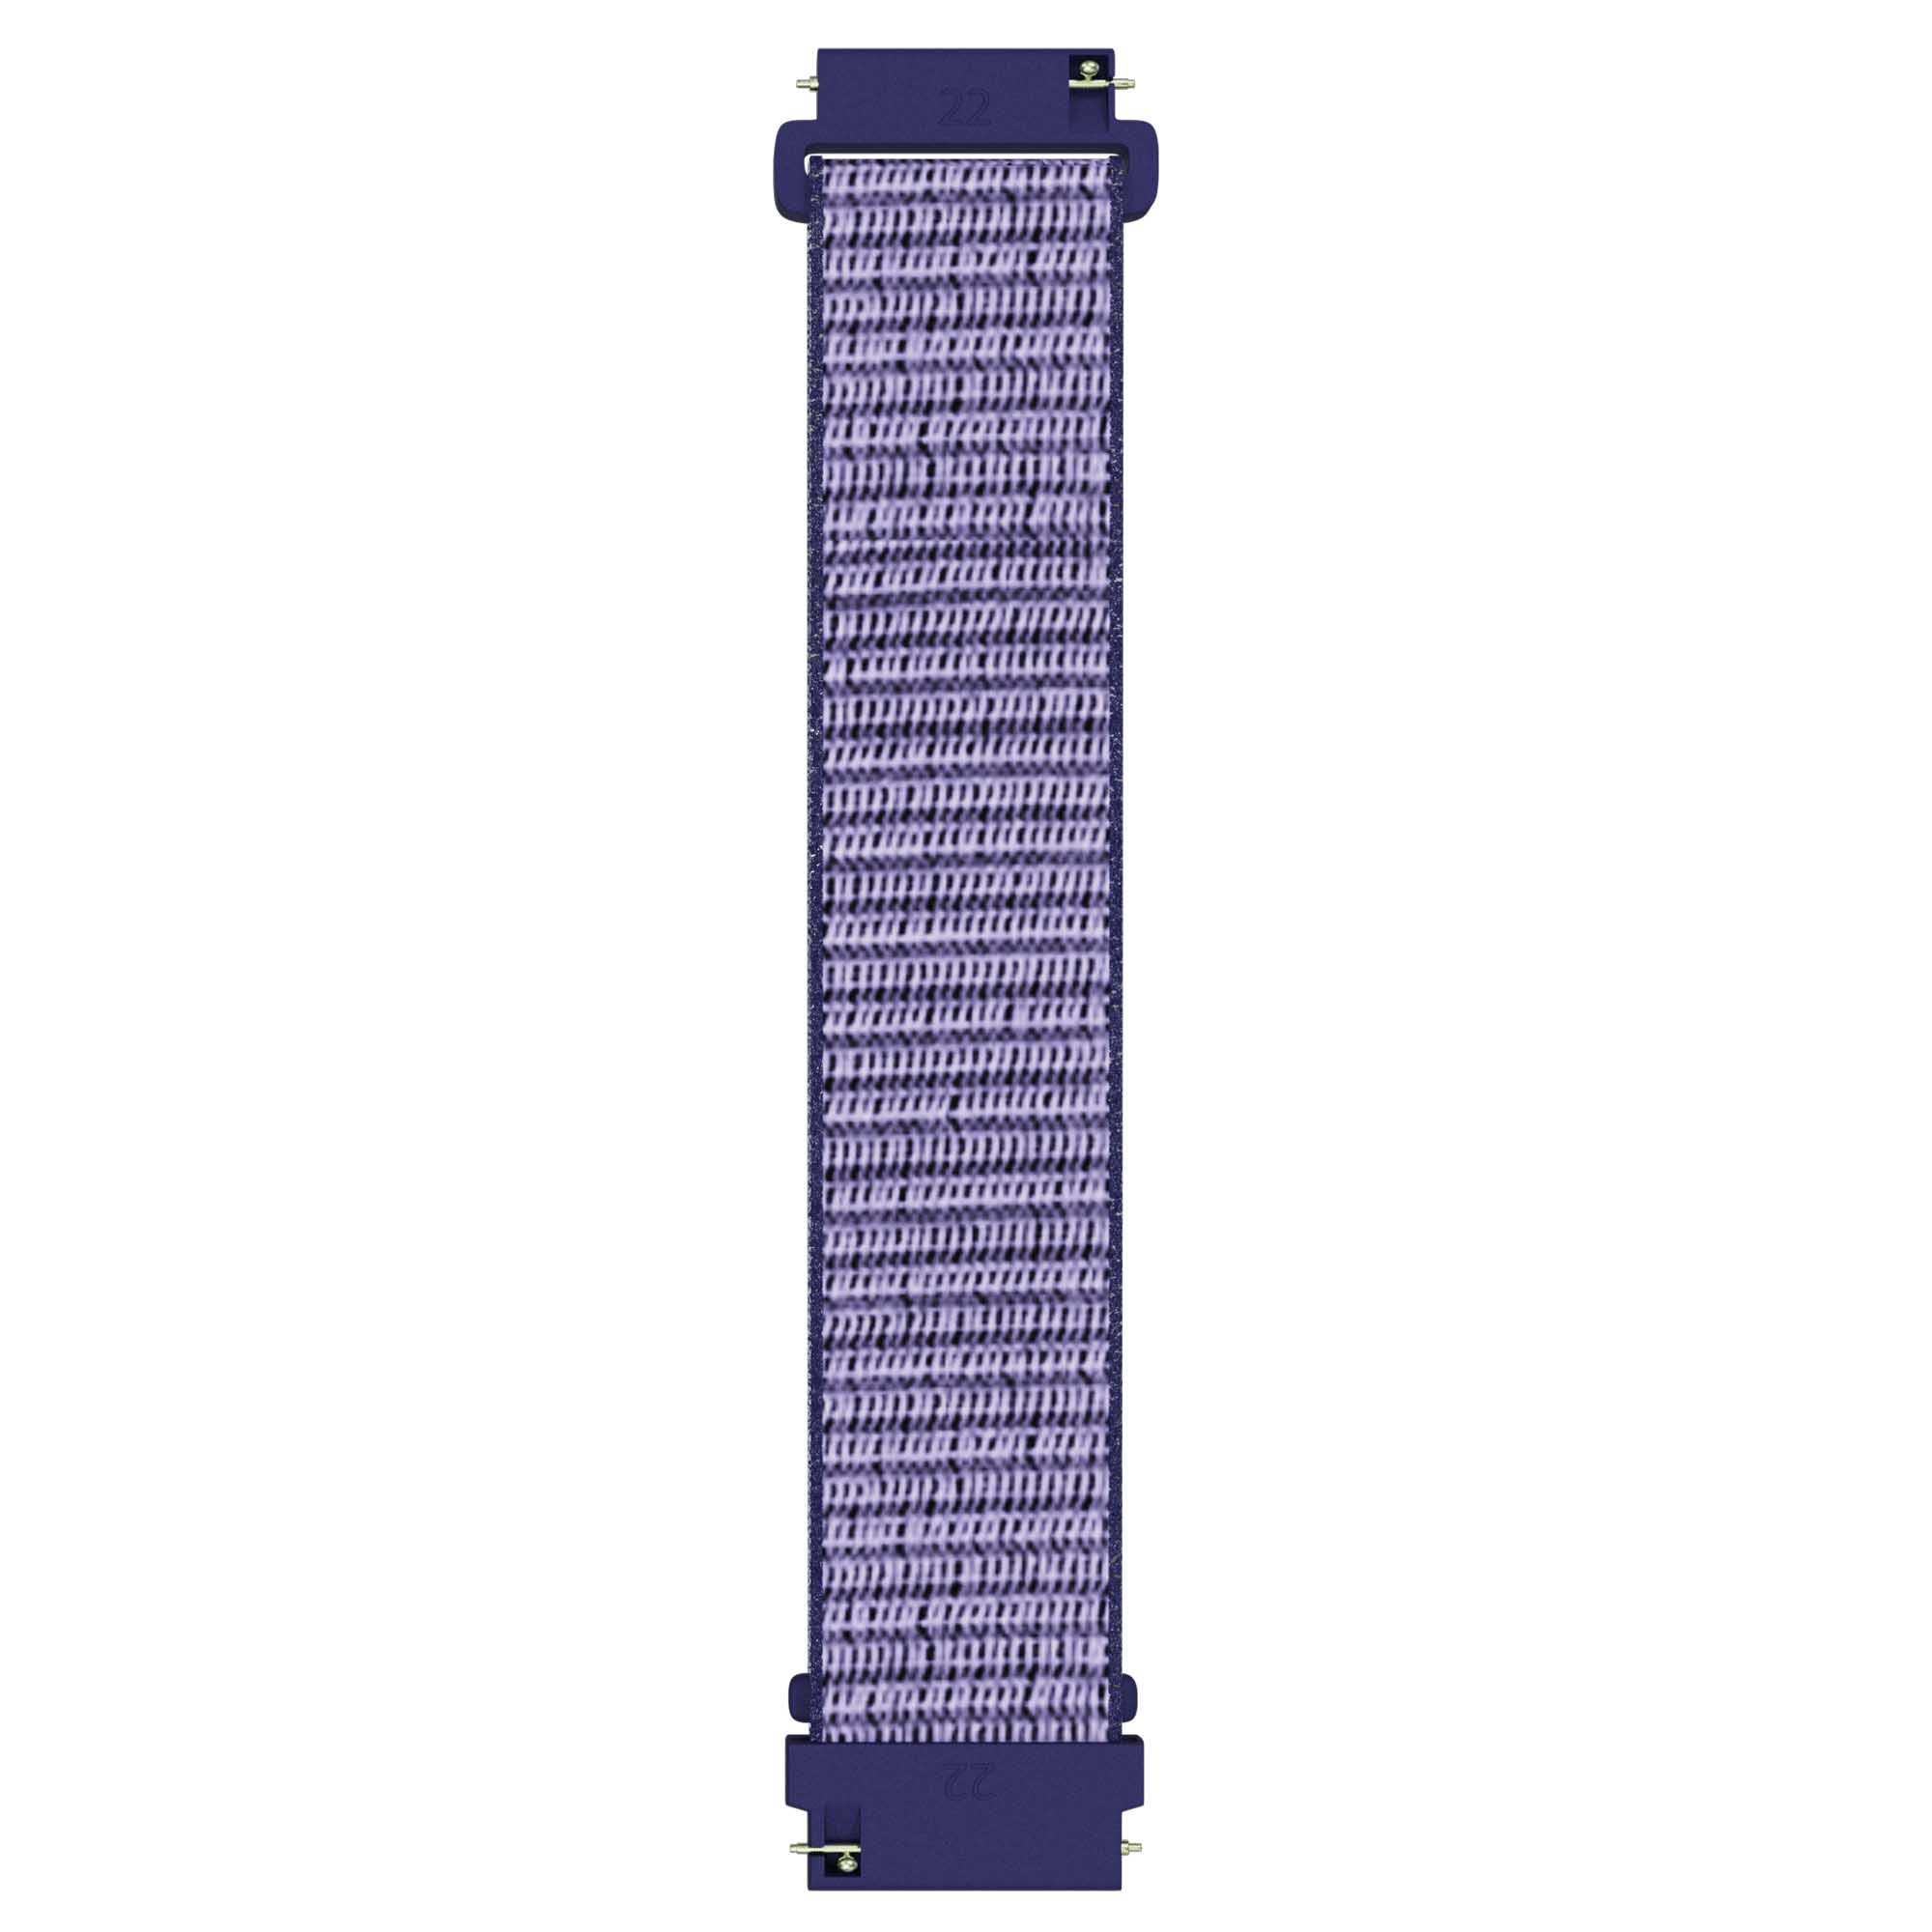 Armband För Smartwatch 20mm Nylon - Marinblå